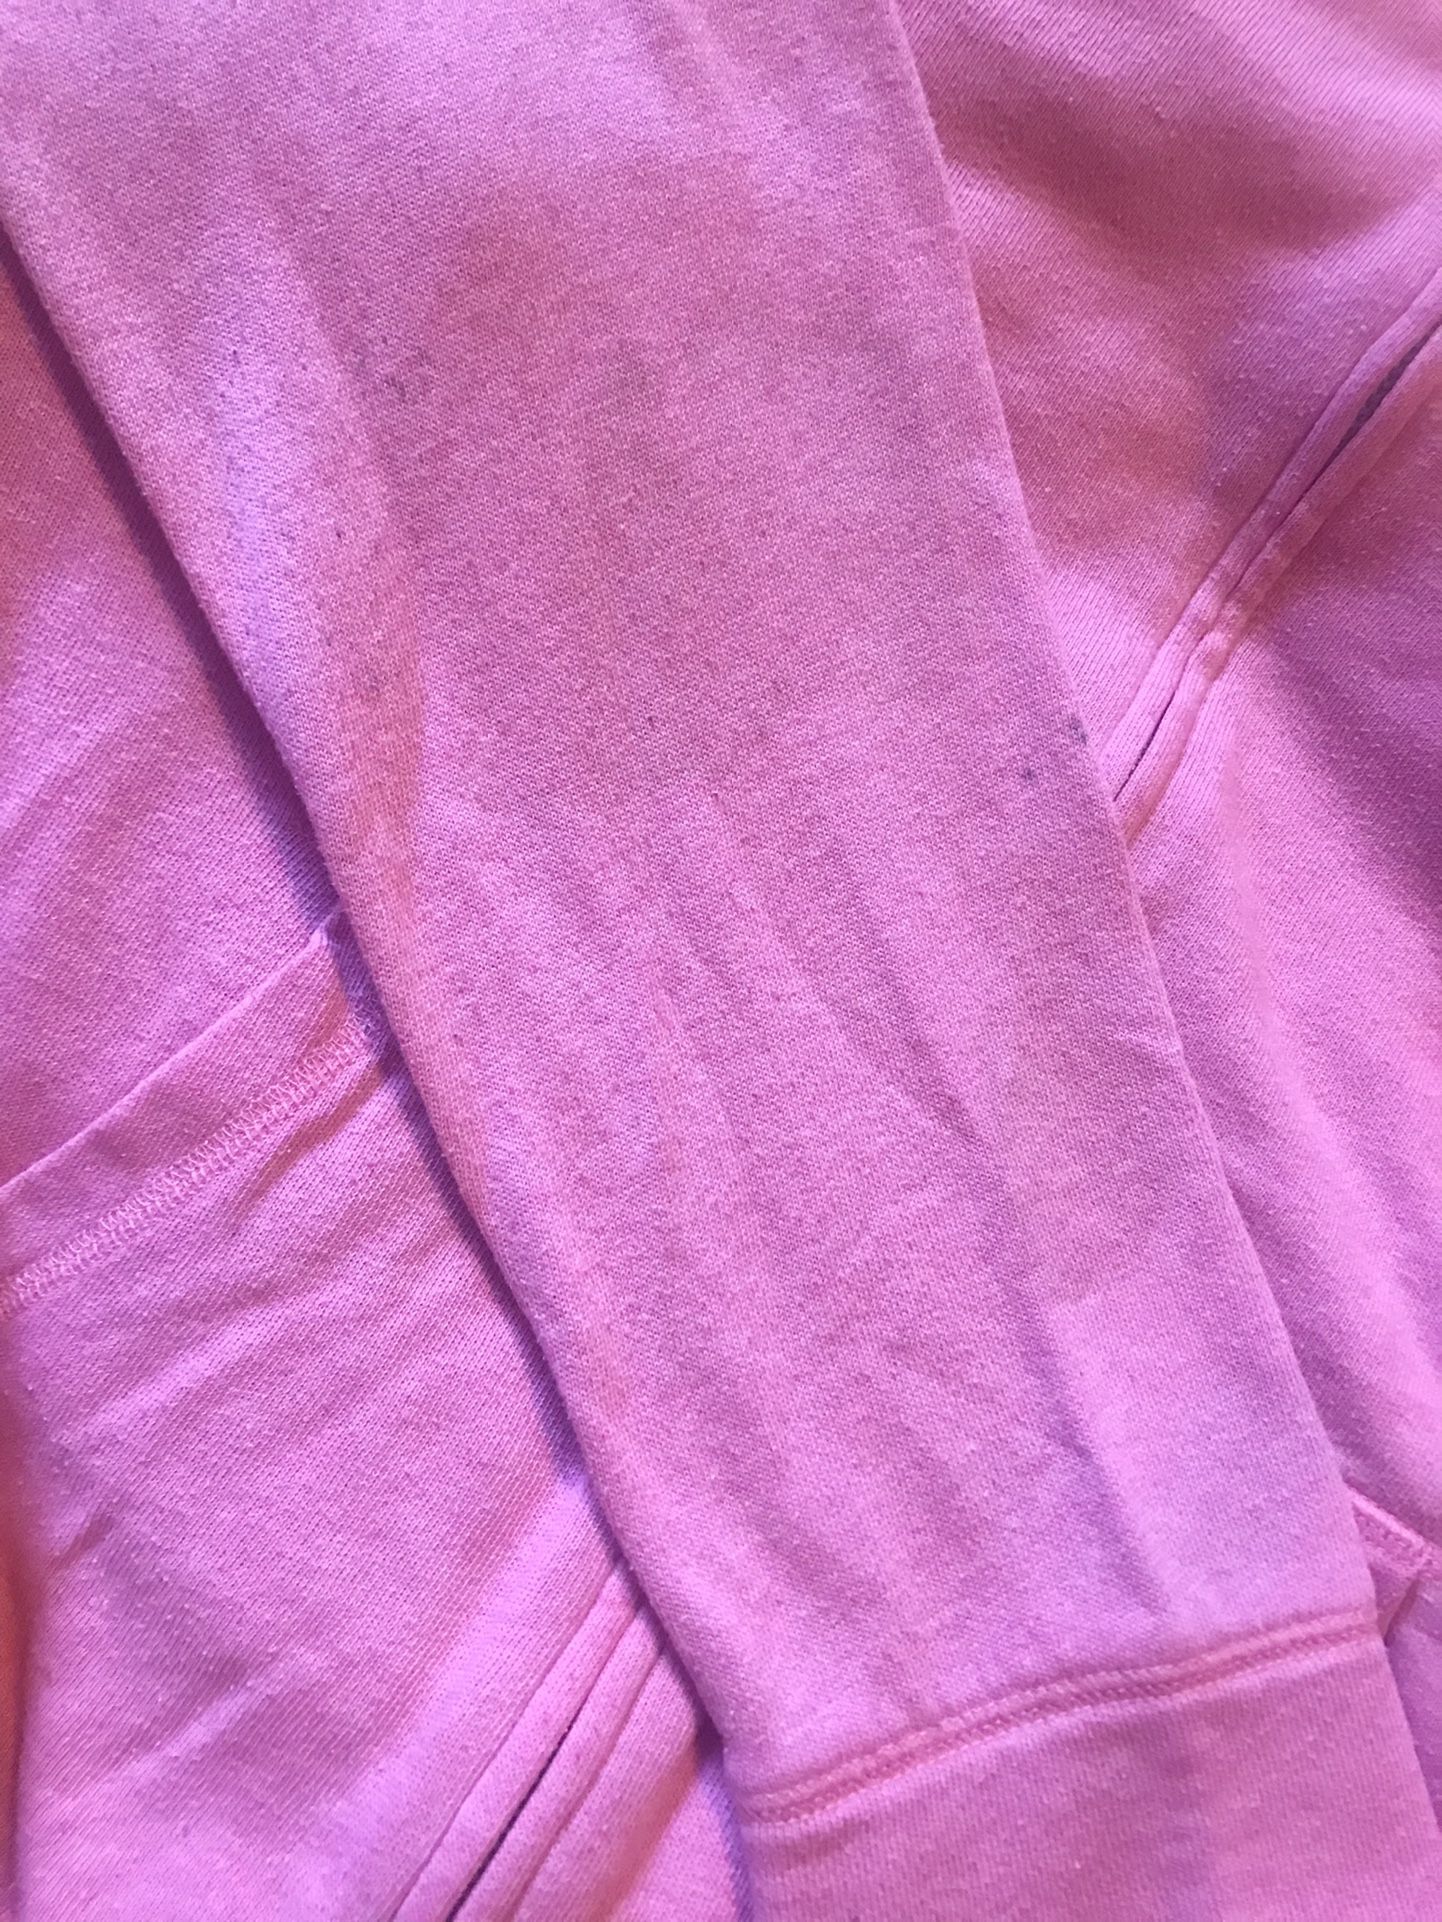 VS Pink Victoria Secret Pink Hoodie Sweatshirt Zip Jacket